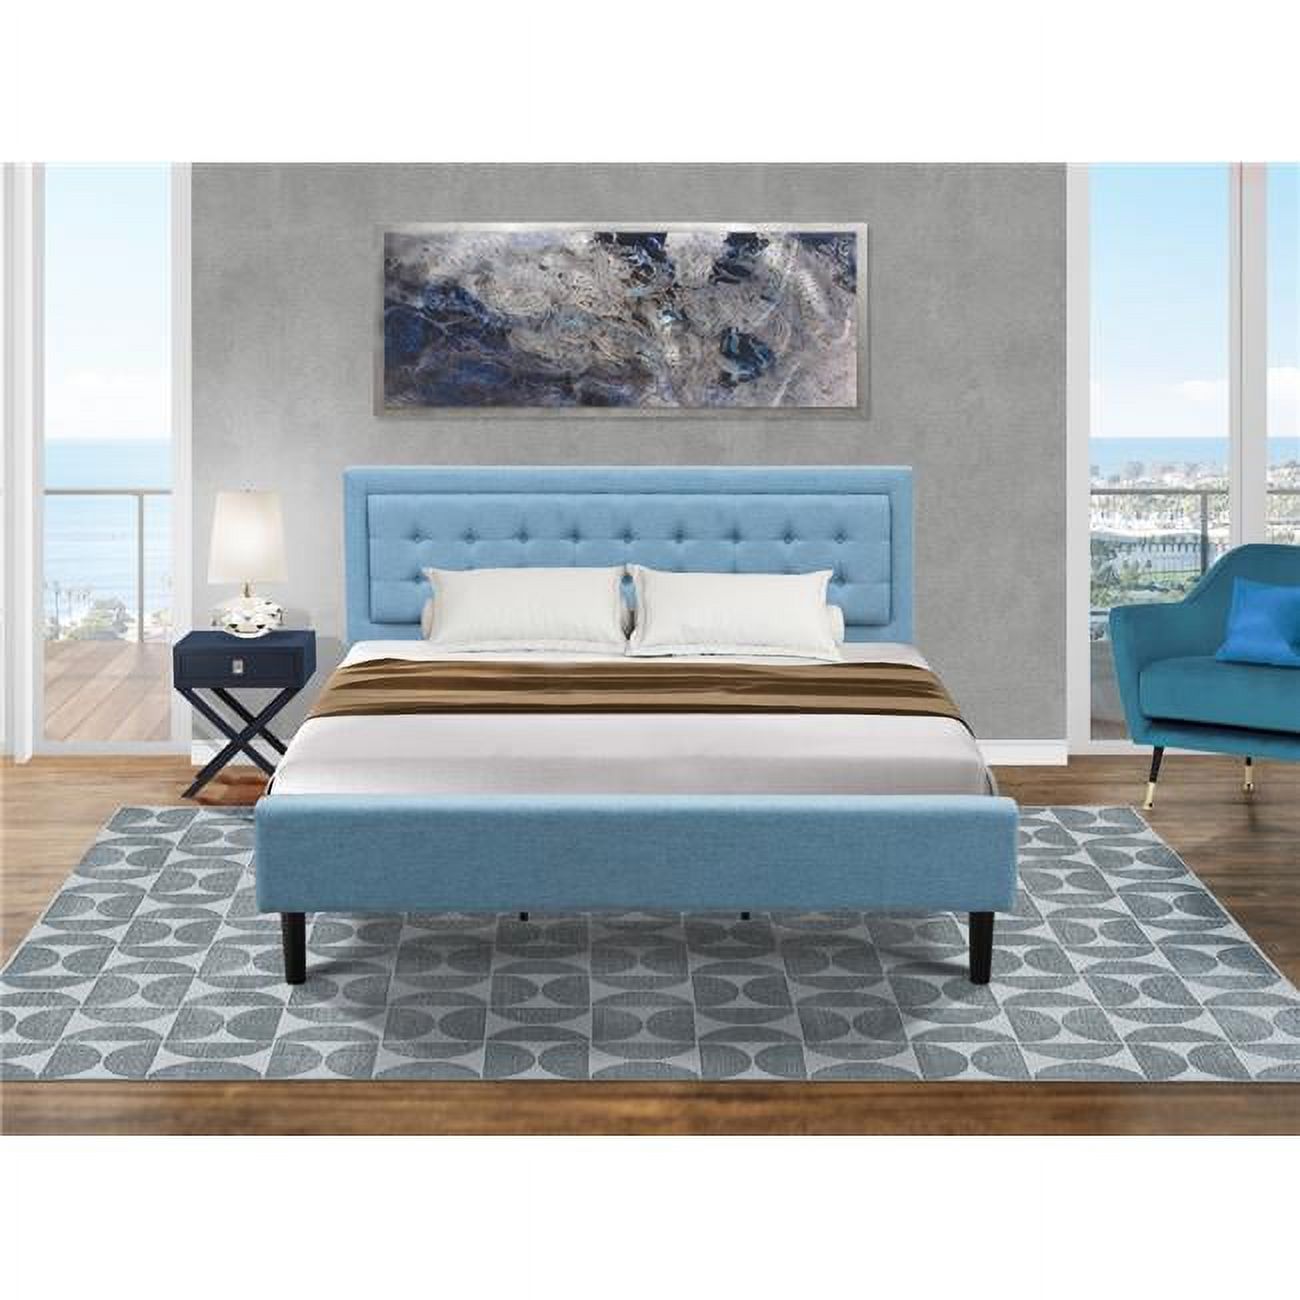 East West Furniture 2-piece Wood Fannin King Bedroom Set in Denim Blue - image 1 of 5